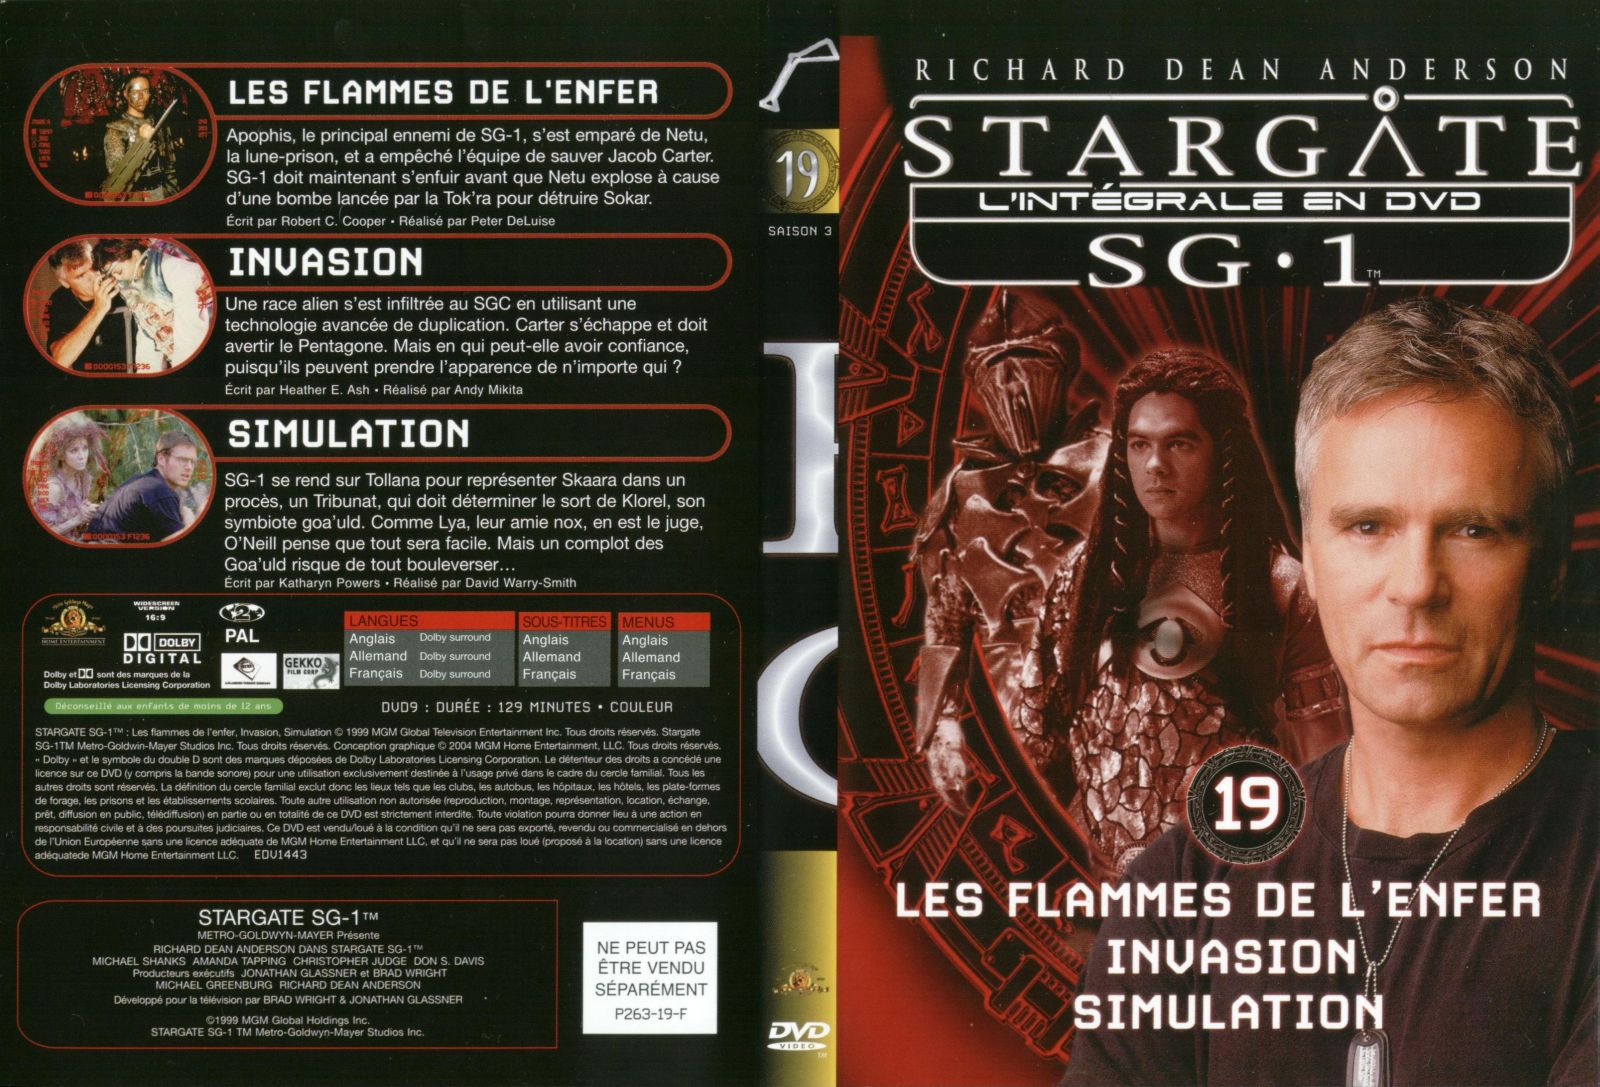 Jaquette DVD Stargate saison 3 vol 19